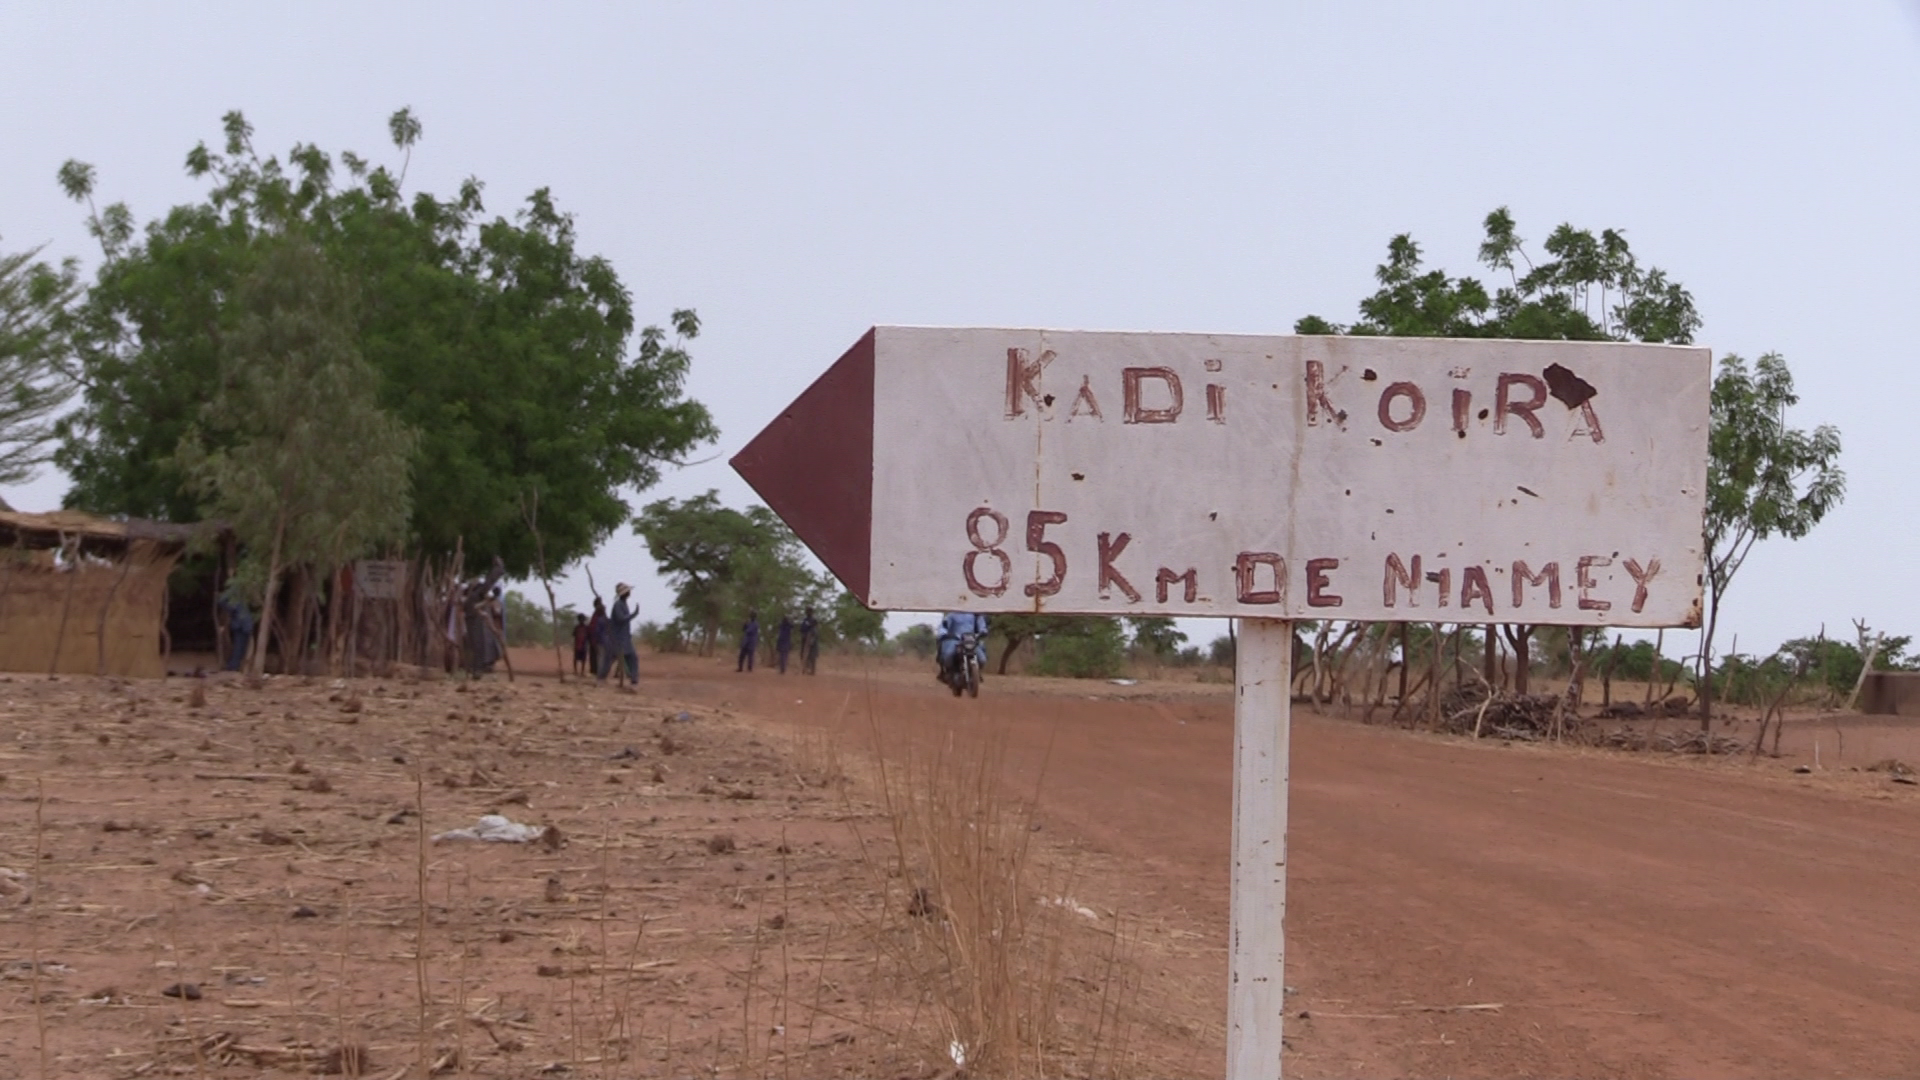 Historique de la création du village Kadi Koira